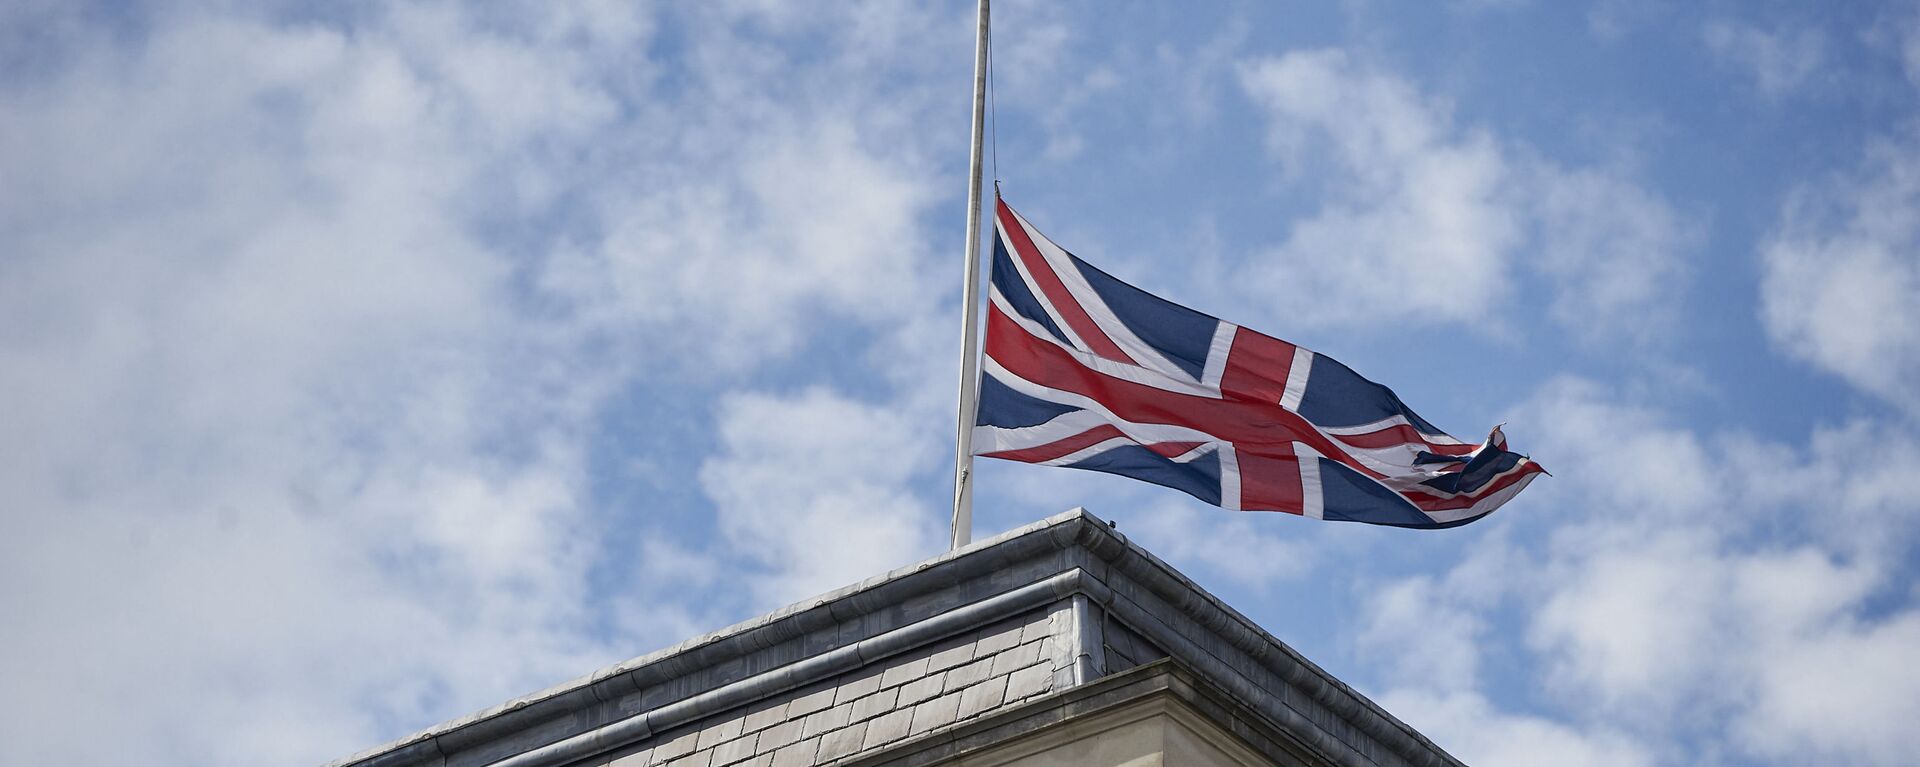 Quốc kỳ Anh trên tòa nhà Bộ Ngoại giao Anh ở London. - Sputnik Việt Nam, 1920, 21.10.2021